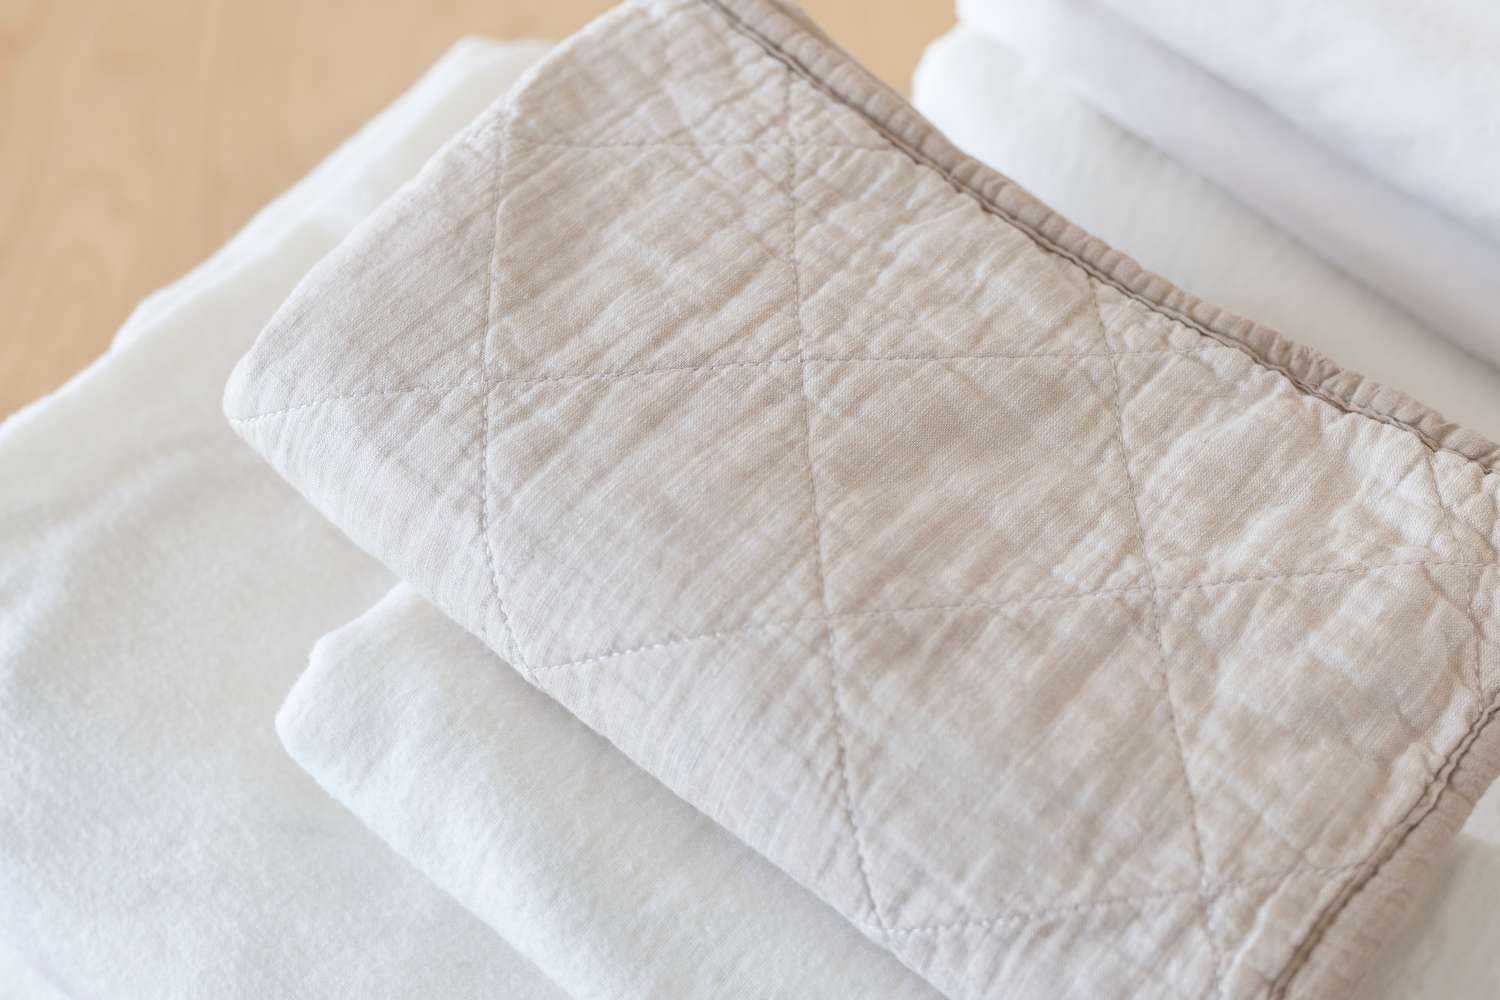 die Dampffunktion kann für die Desinfektion von Bettwäsche und Handtüchern in Betracht gezogen werden